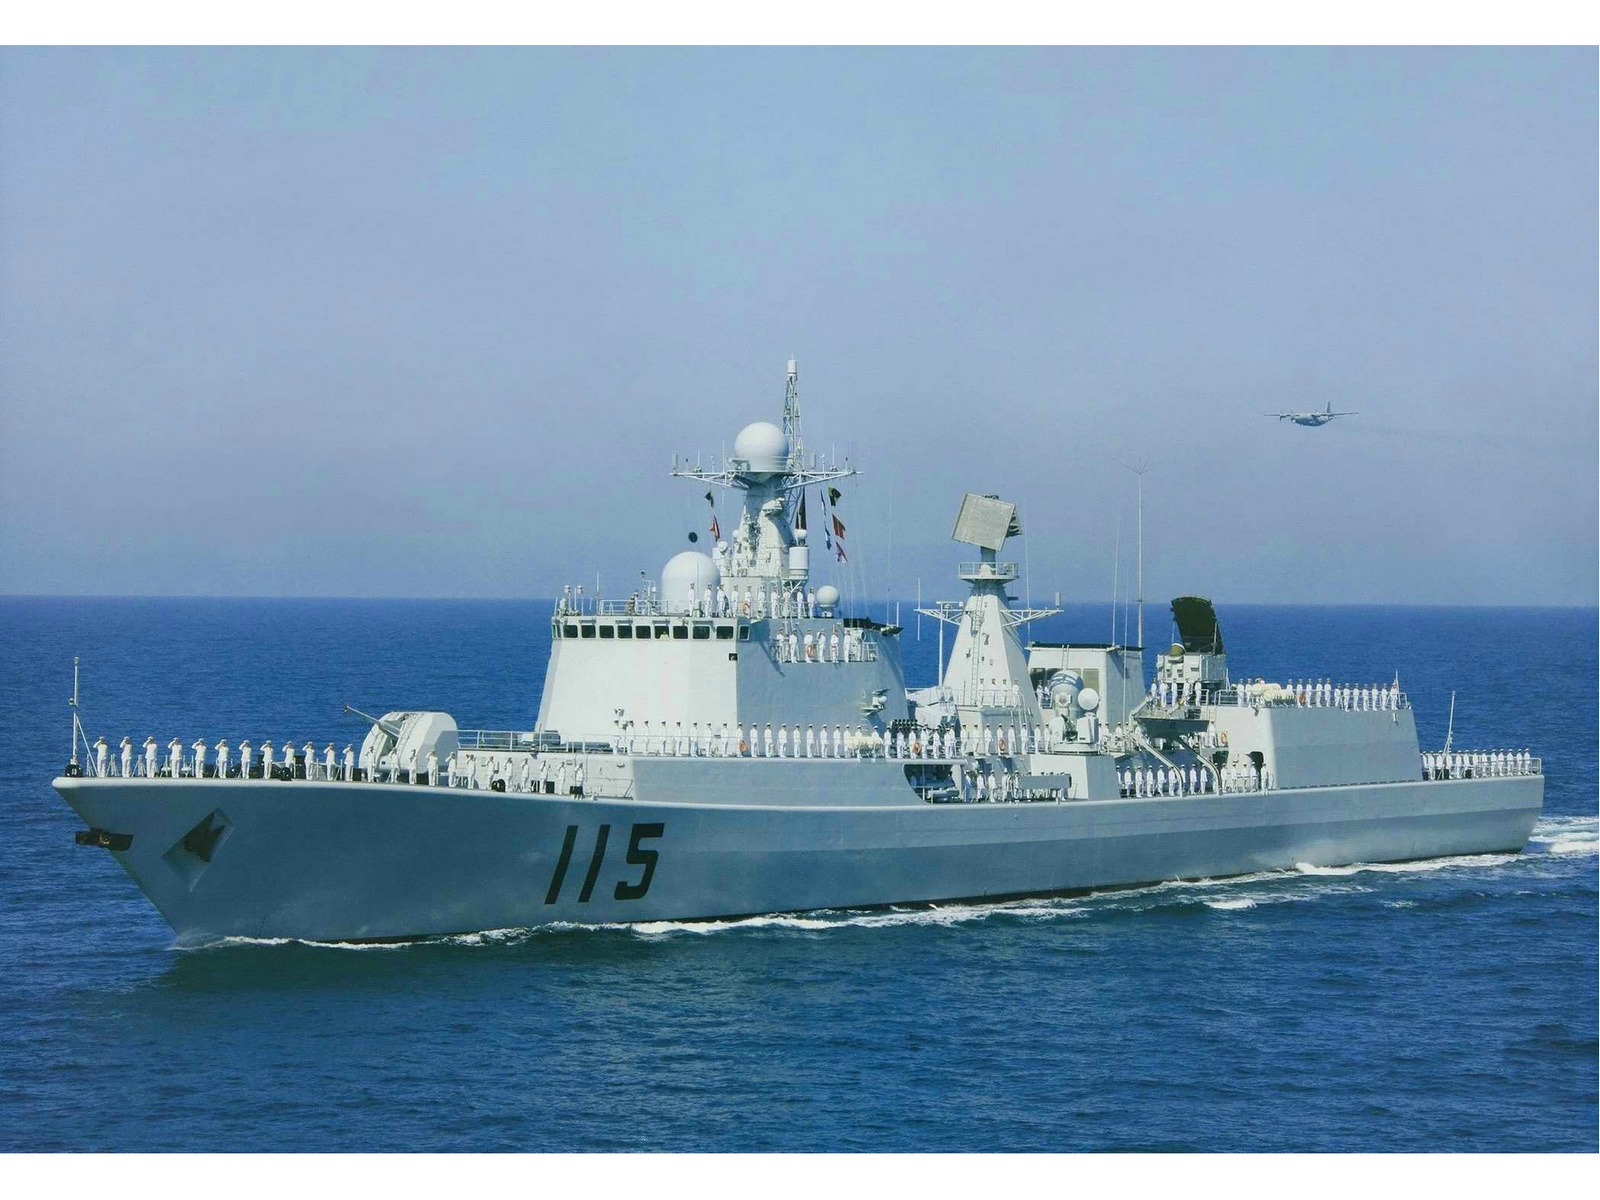 瀋陽號驅逐艦(中國051C型驅逐艦，舷號115)